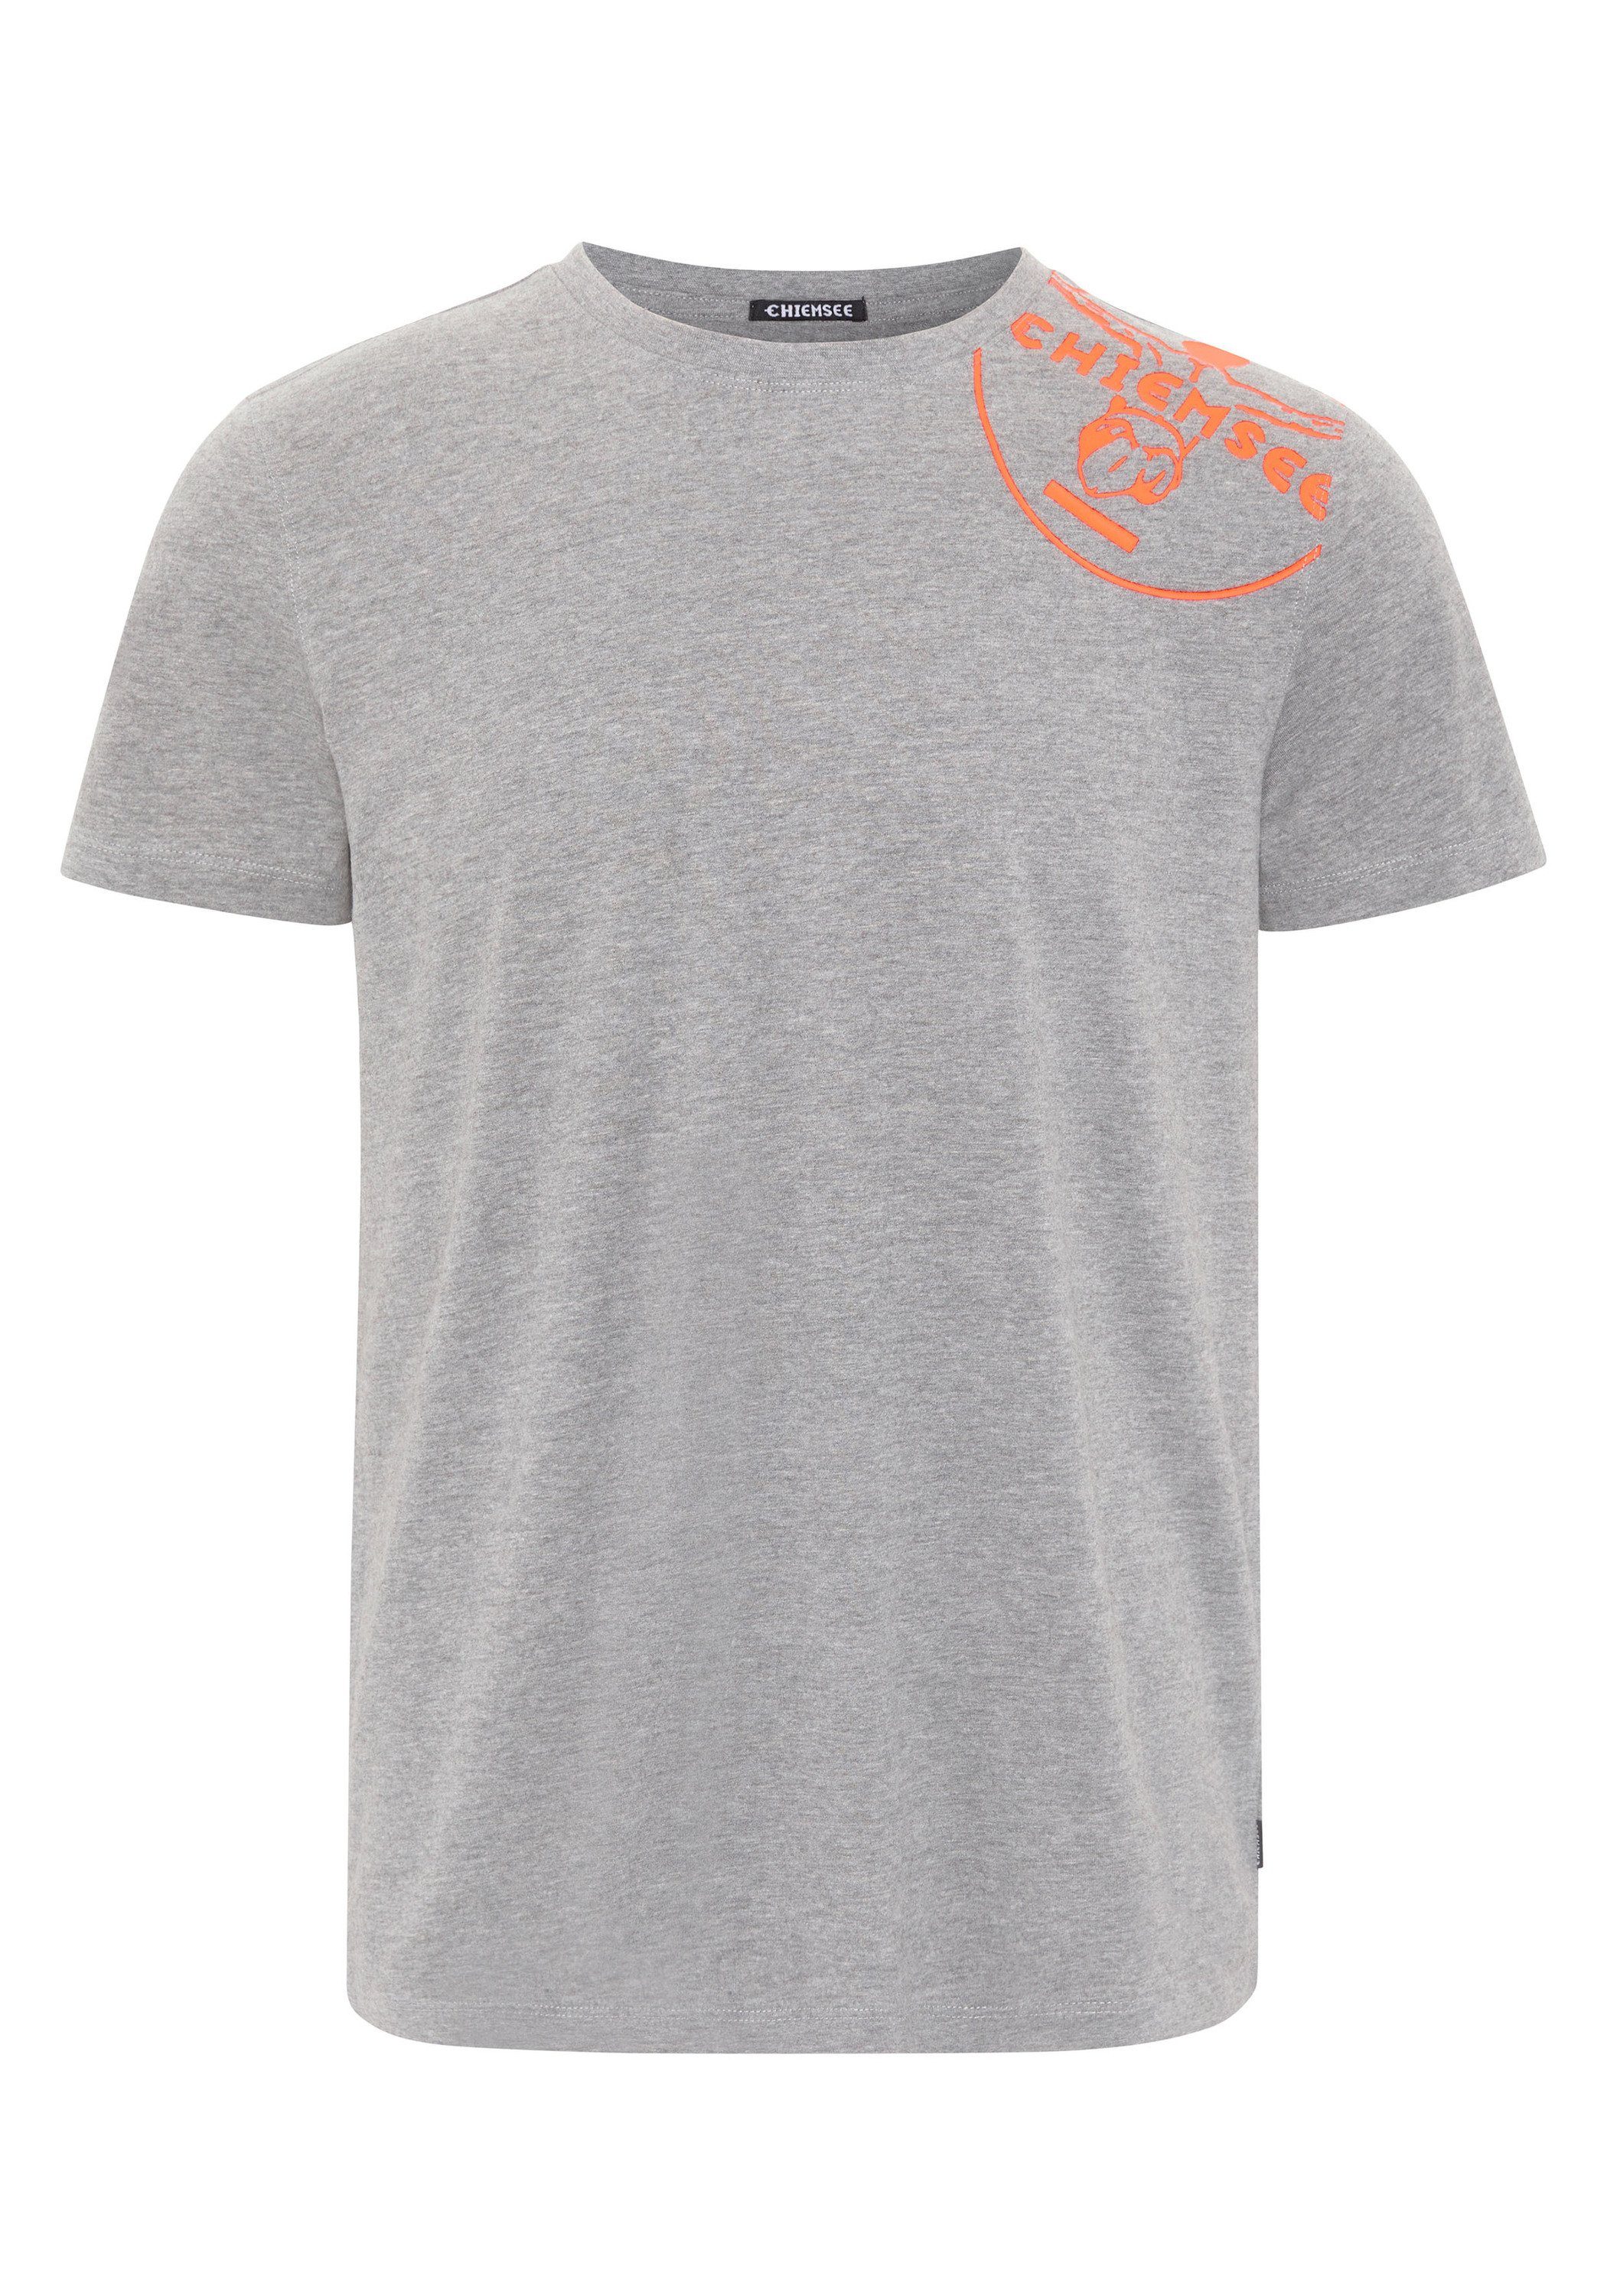 Chiemsee Print-Shirt T-Shirt mit CHIEMSEE mit 1, vorne Jumper-Motiv Herren-Shirt Jumper-Print